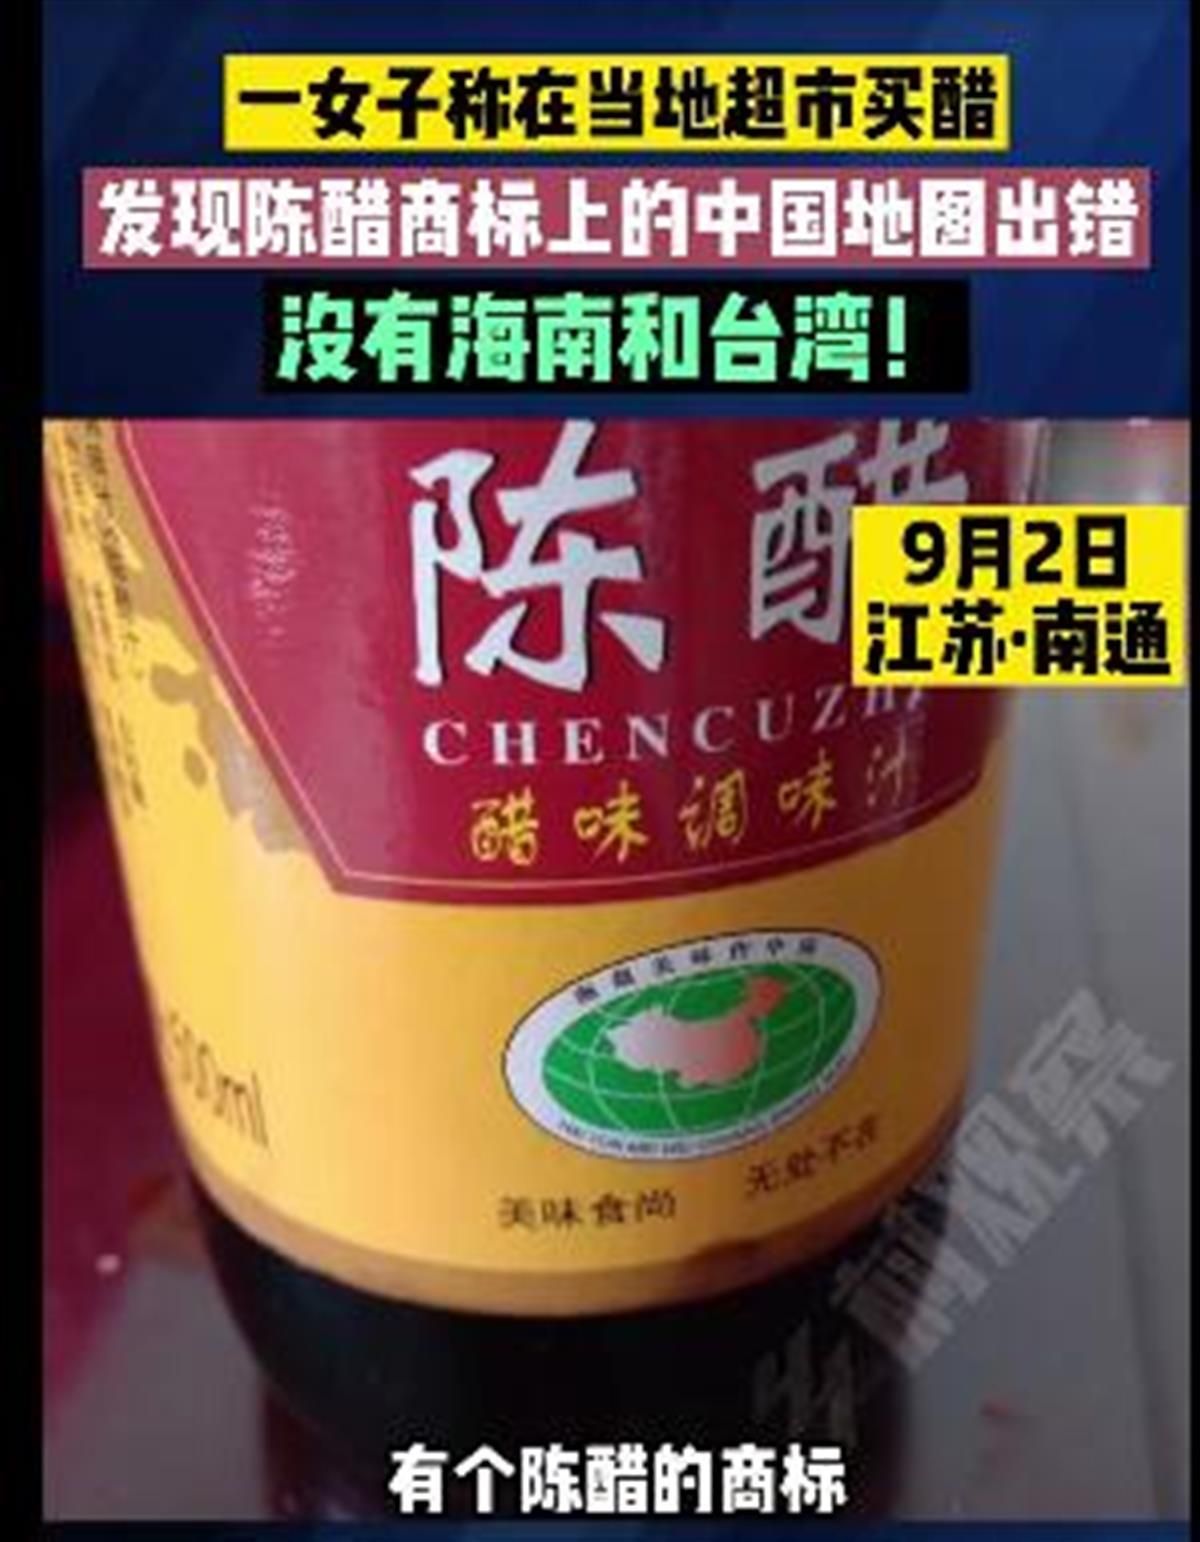 醋瓶包装地图无台湾和海南